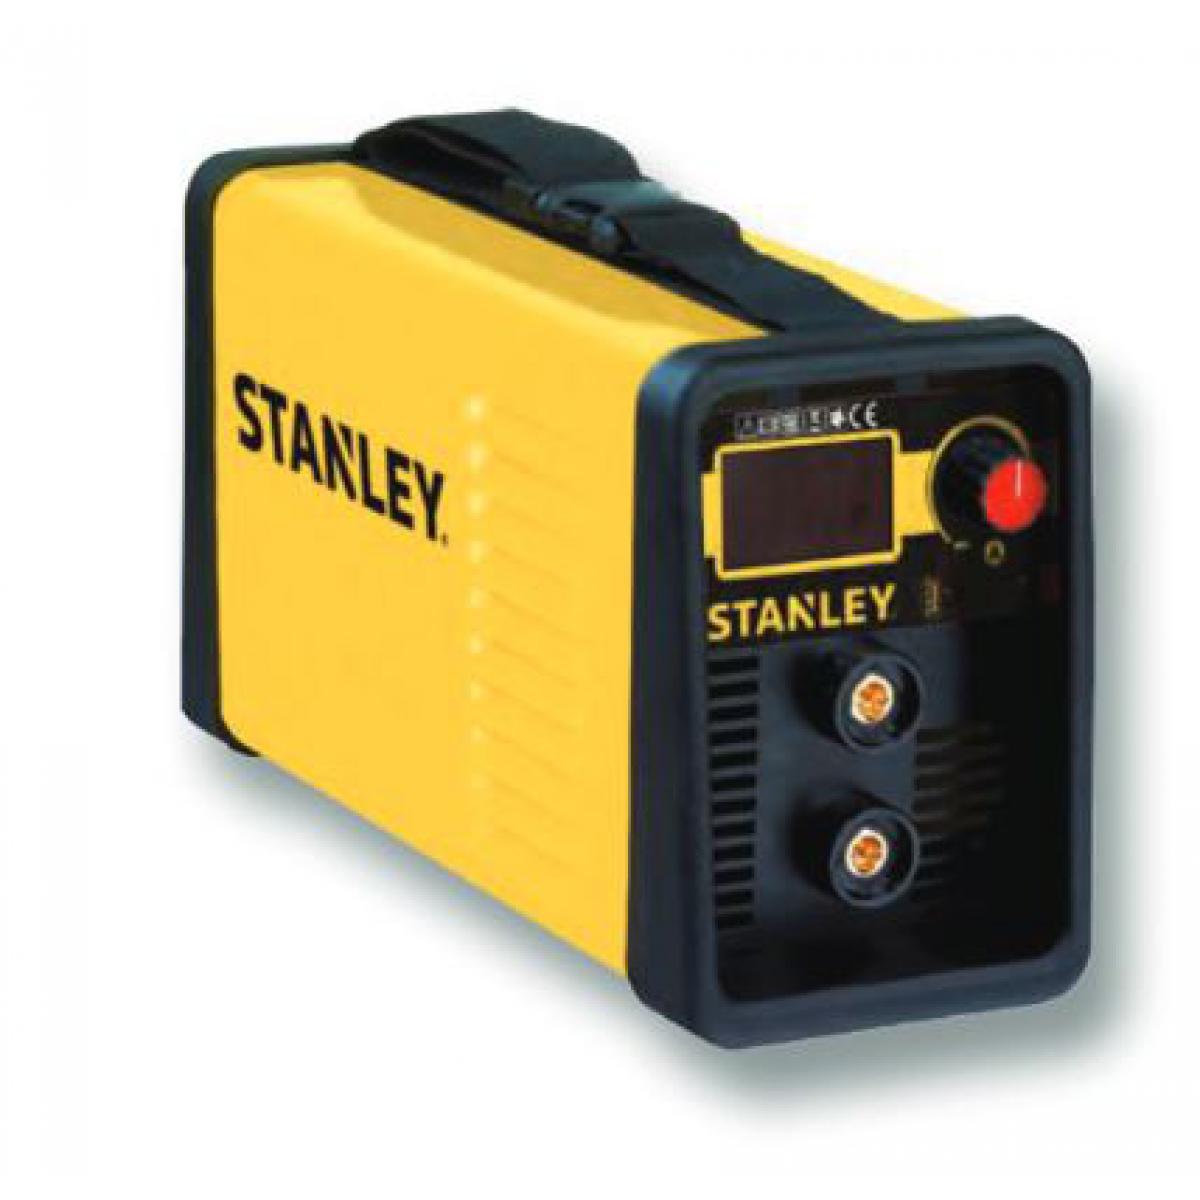 Stanley - Stanley - Poste à souder à l'arc Power 185 + Masque de protection 460186 + Lot de 50 éléctrodes OFFERT - Postes à souder à l'arc